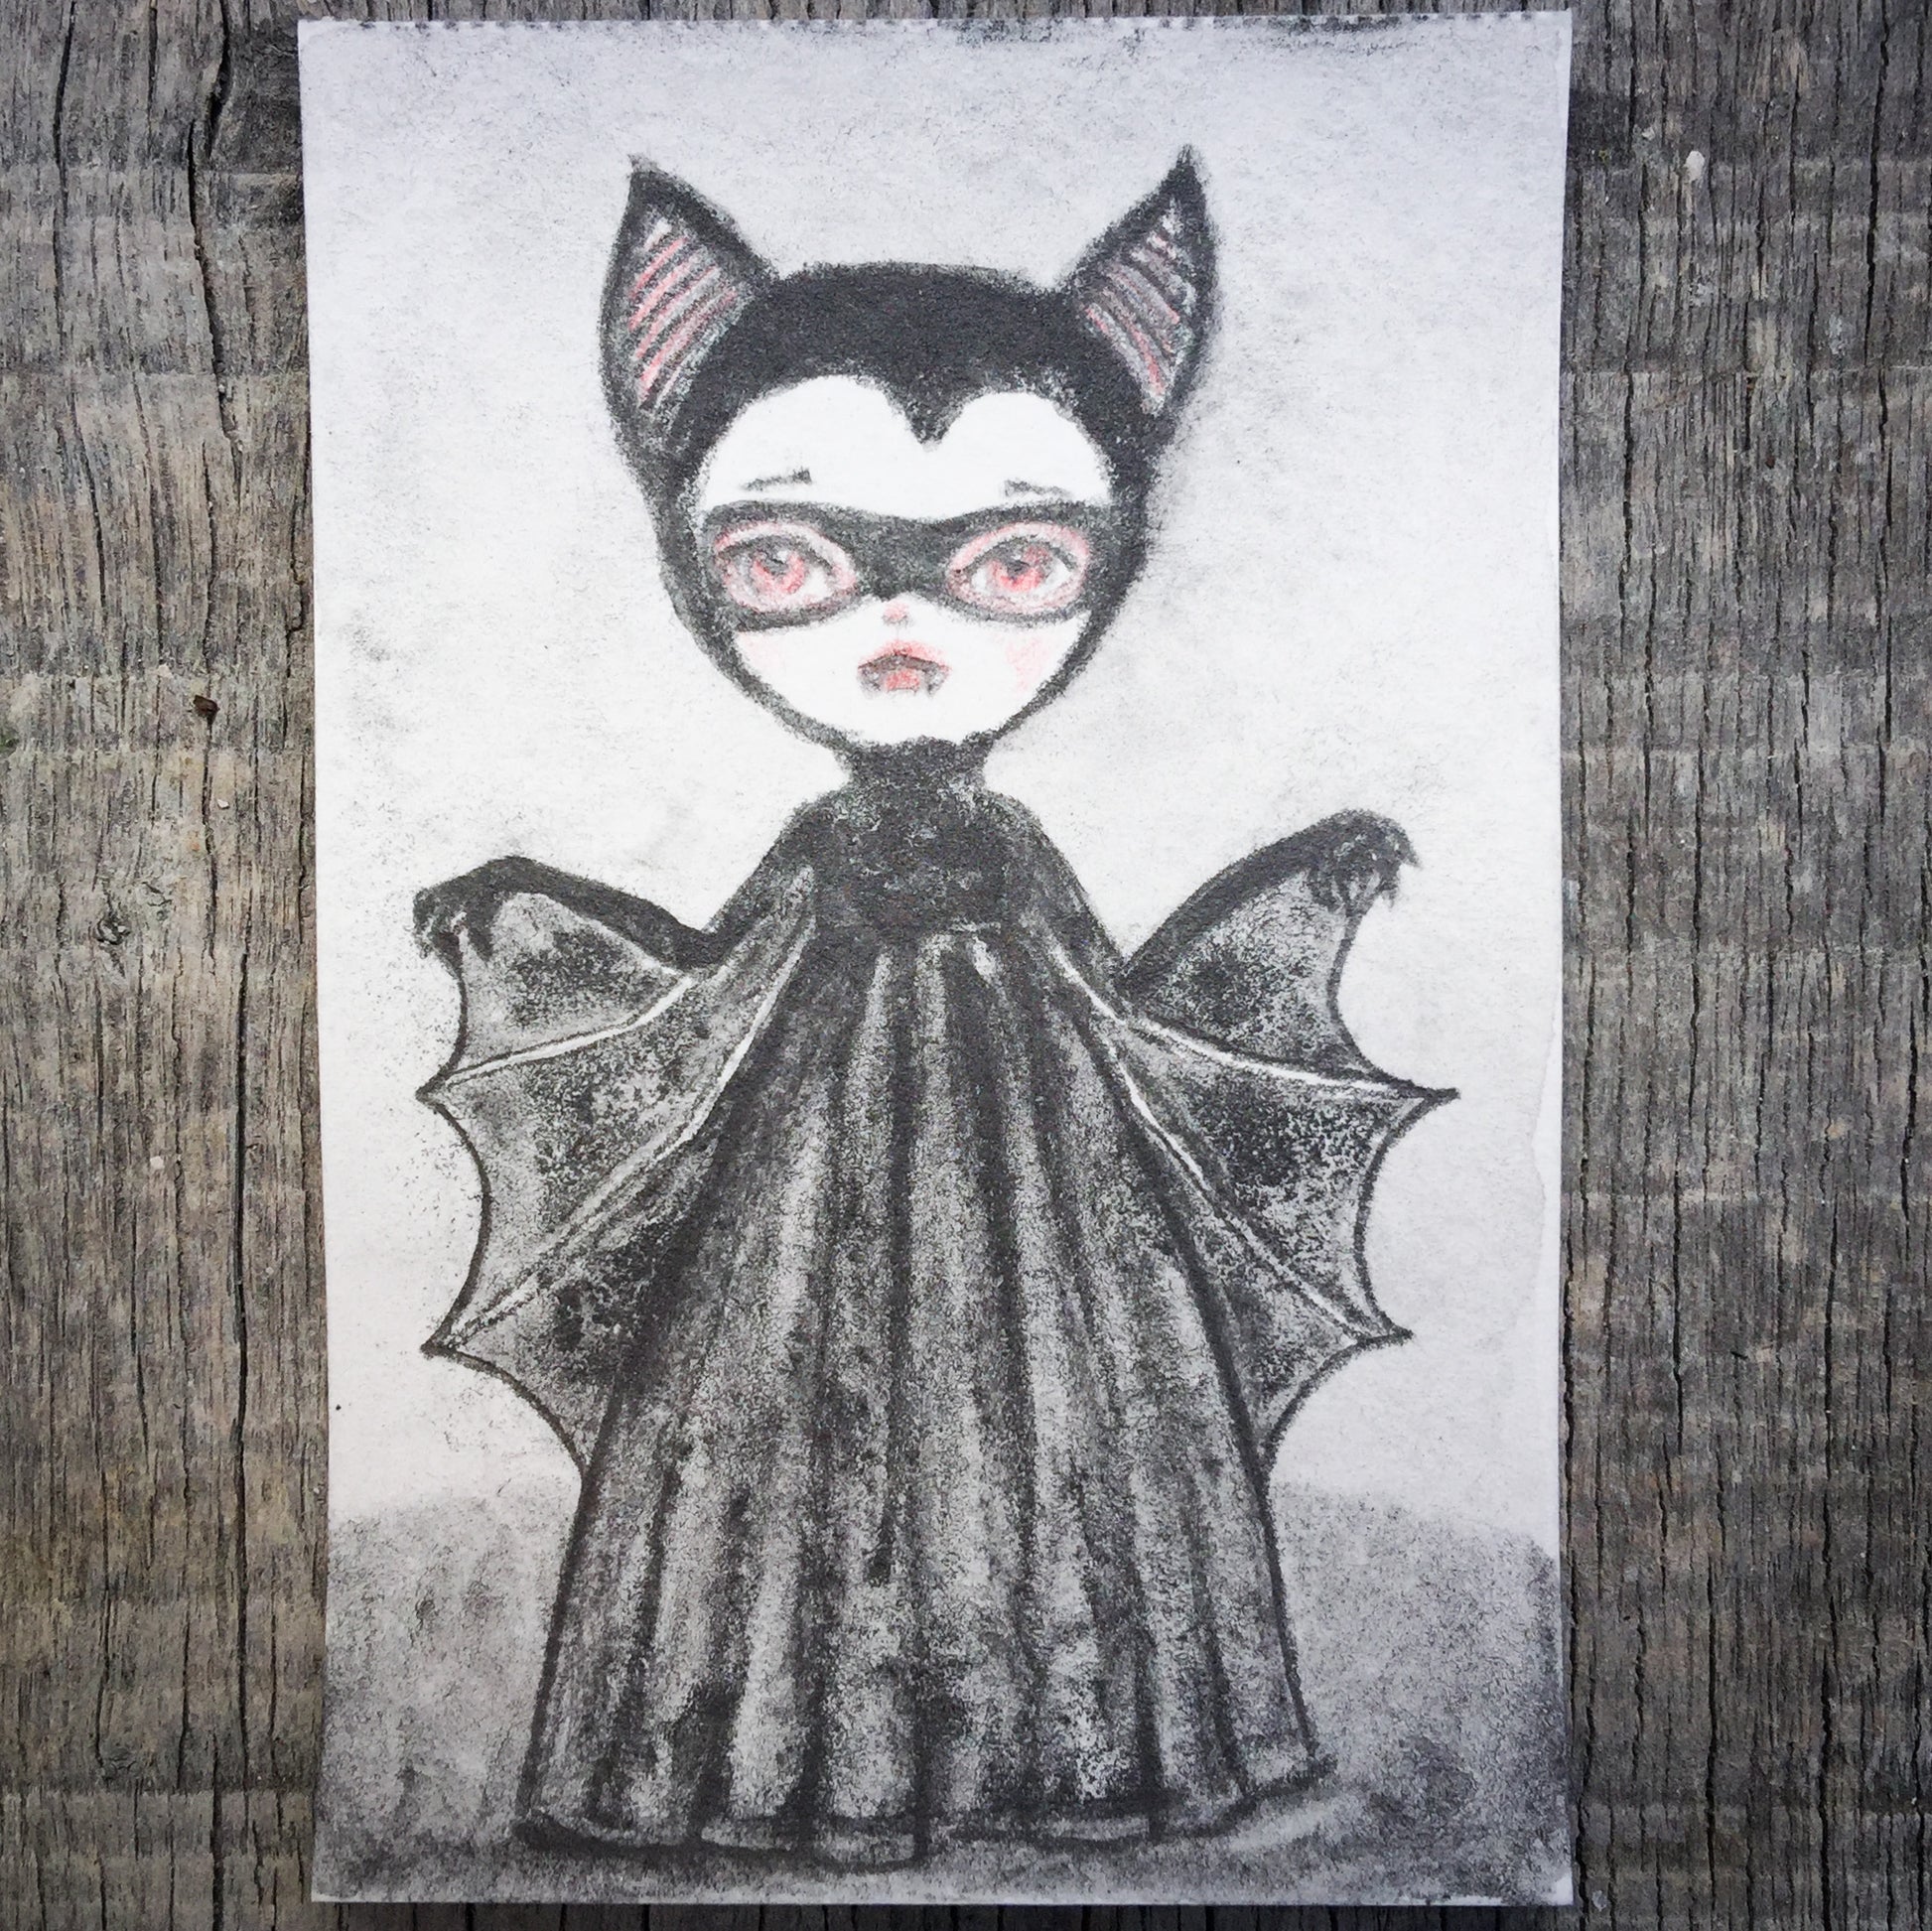 Darknita Danita Monster Creature Vampire Watercolor Graphite Pencil Drawing ACEO Card Original Halloween Illustration